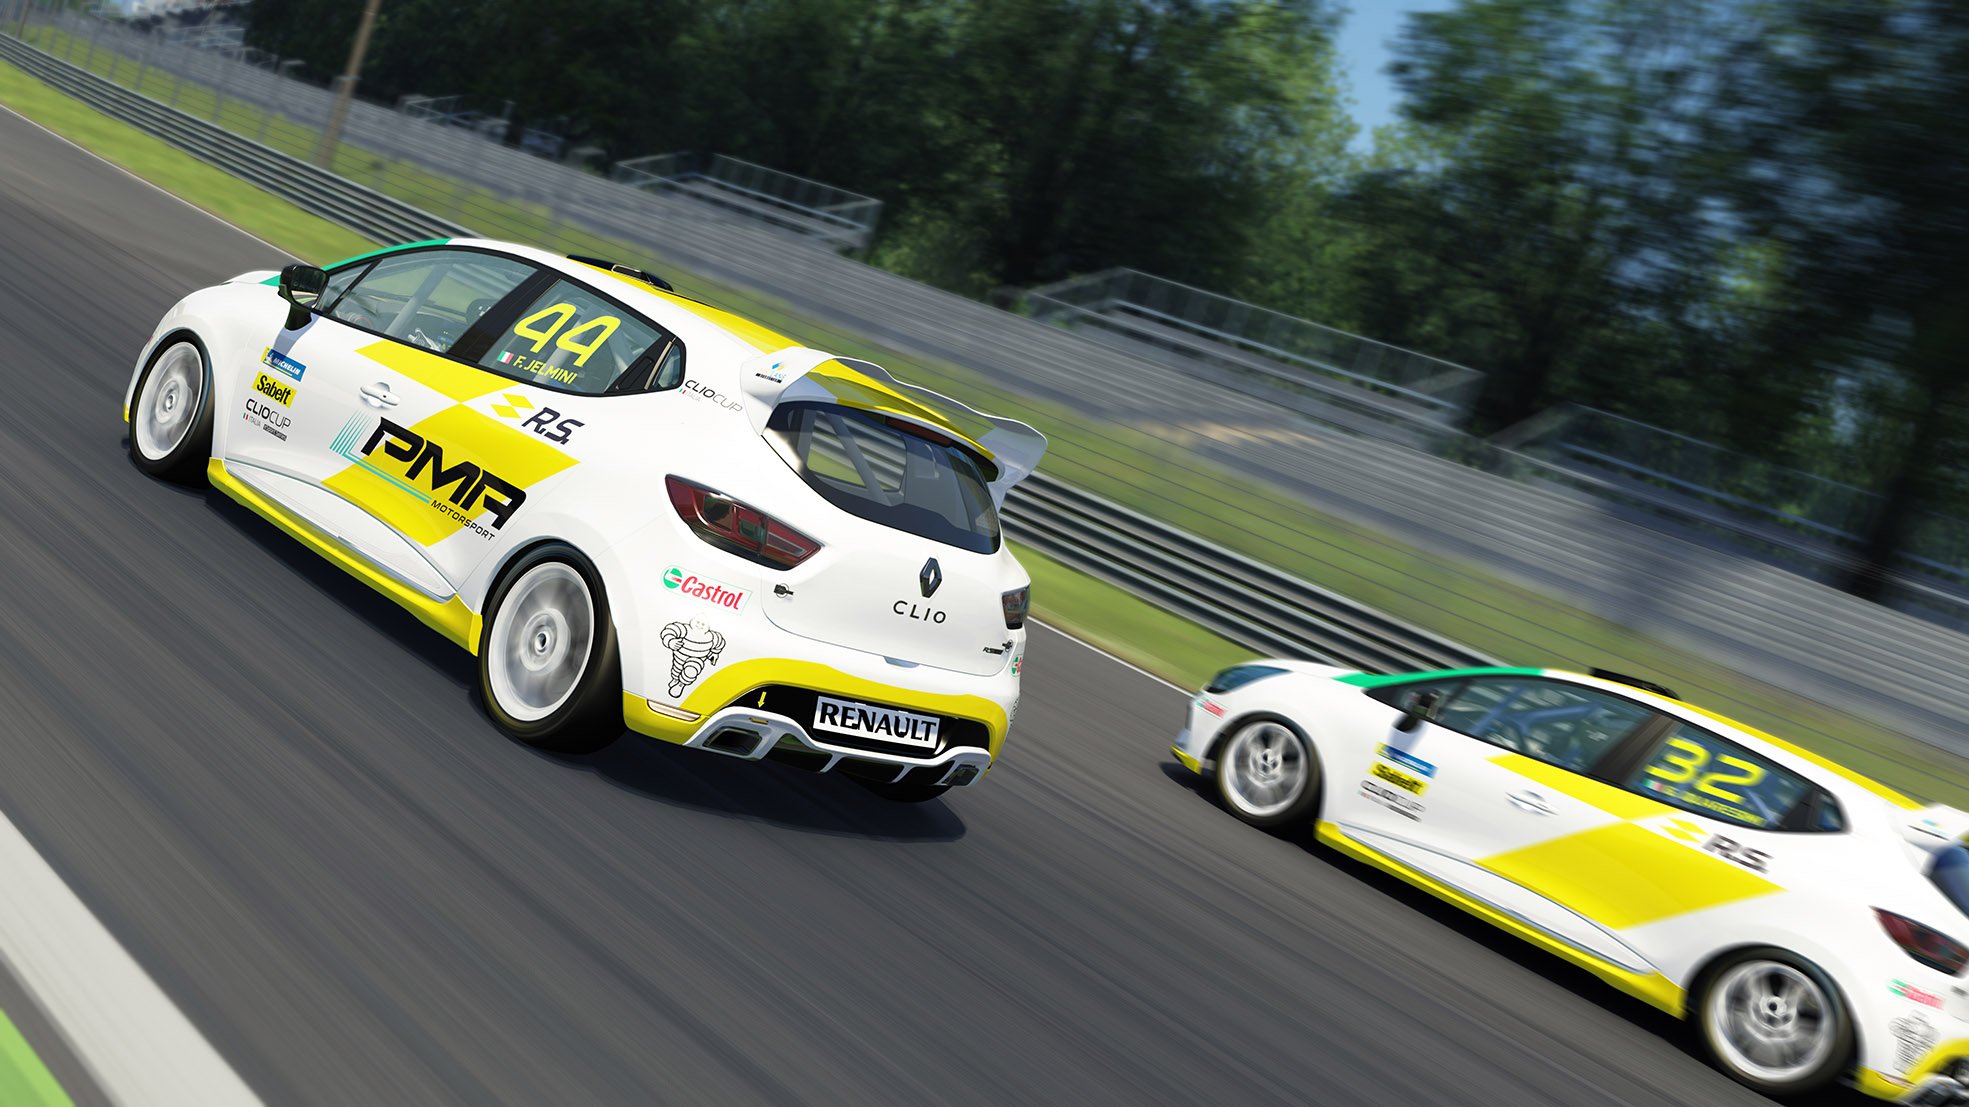 More information about "La Clio Cup eSport Series da spettacolo a Monza"